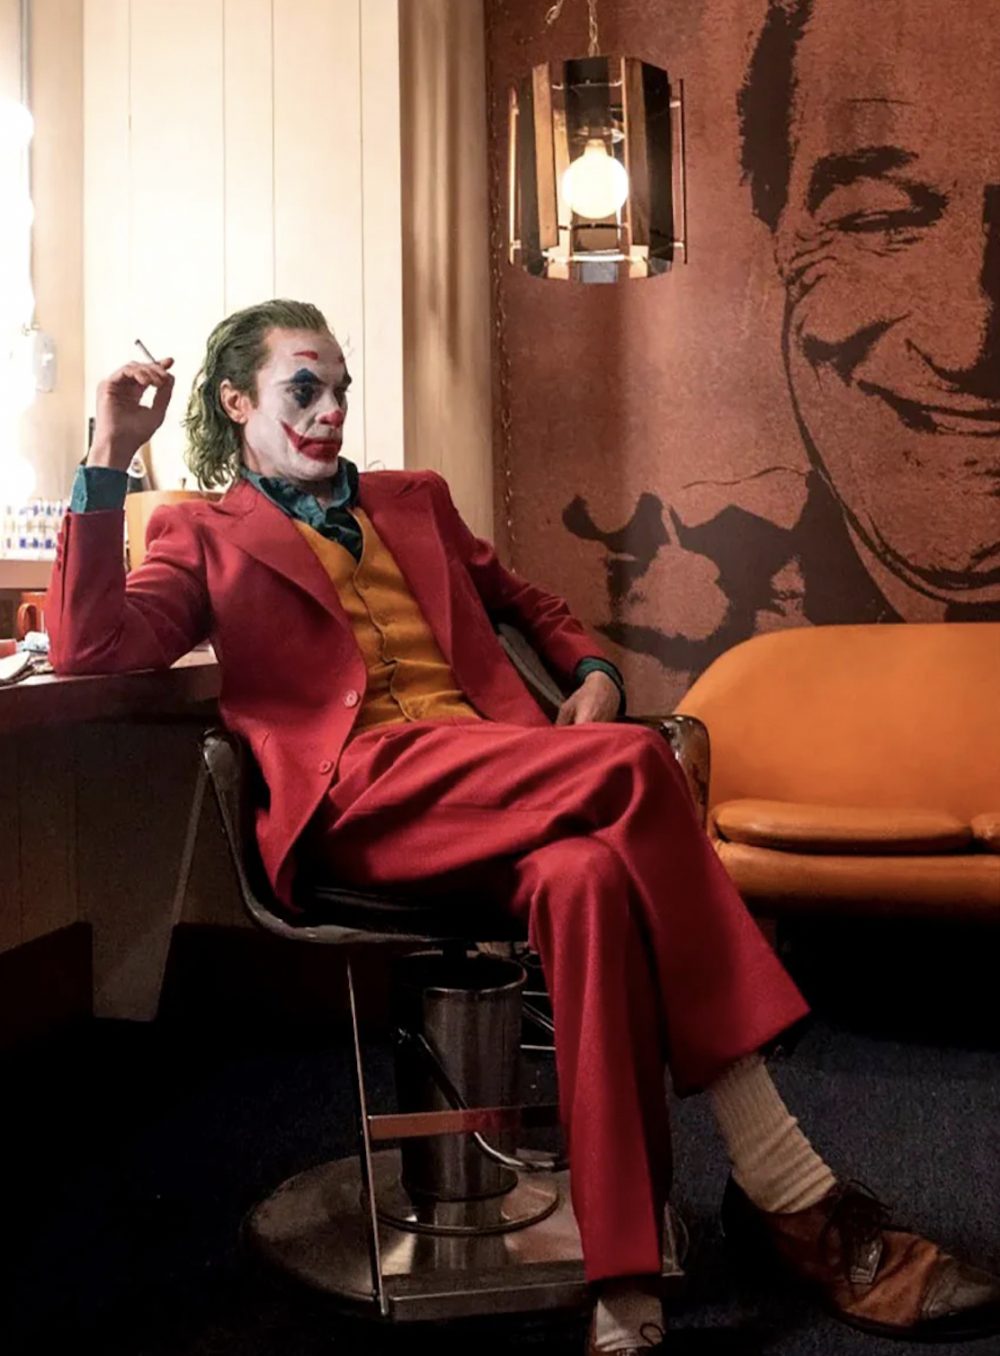 Top phim hay nhất mọi thời đại: Gã hề – Joker (2019)